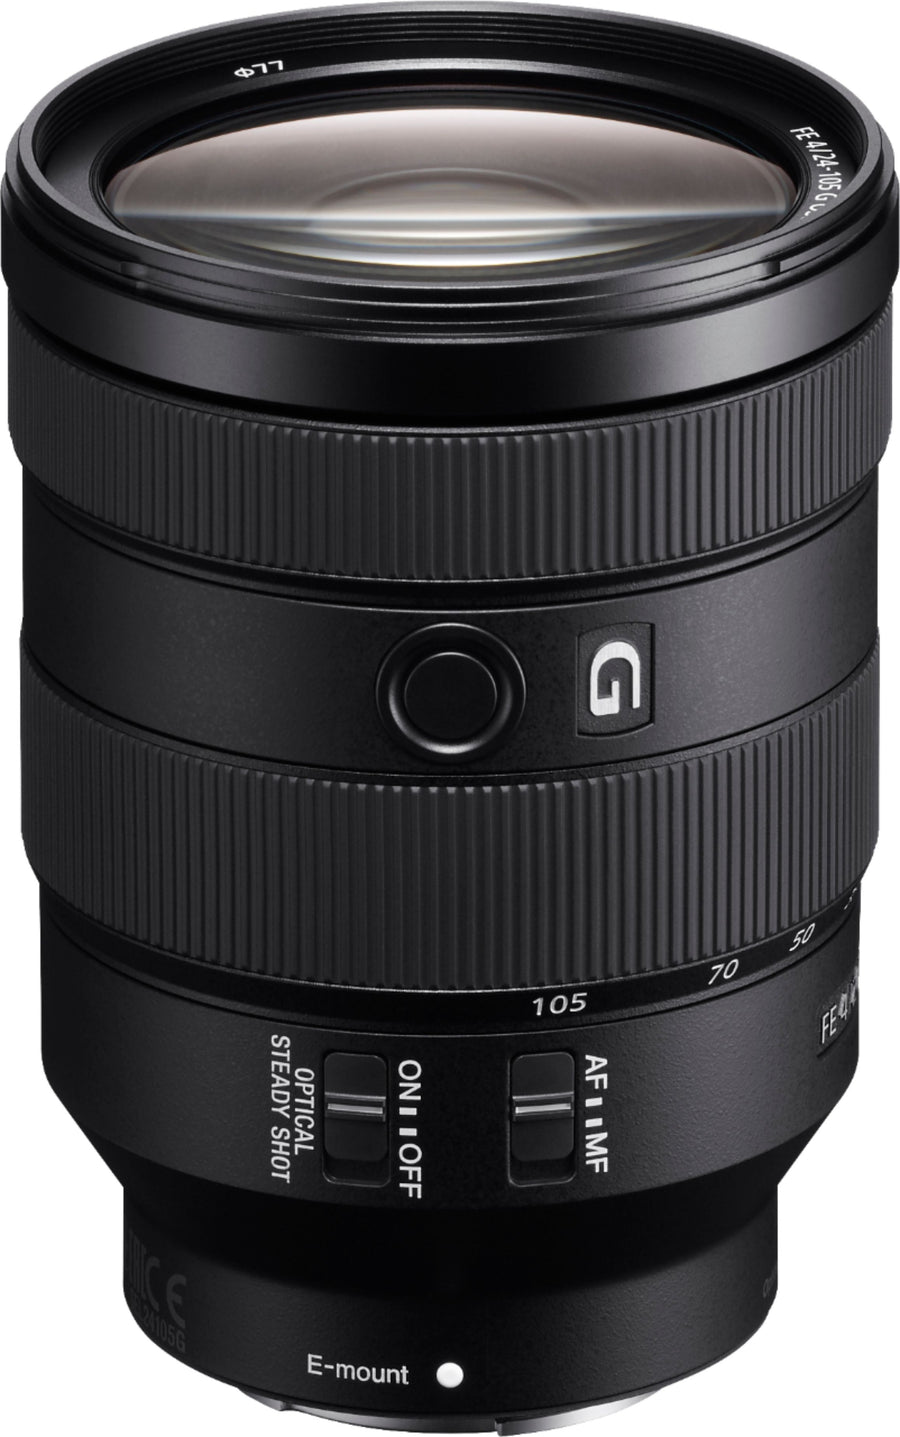 Sony - G 24-105mm f/4 G OSS Standard Zoom Lens for E-mount Cameras - Black_0